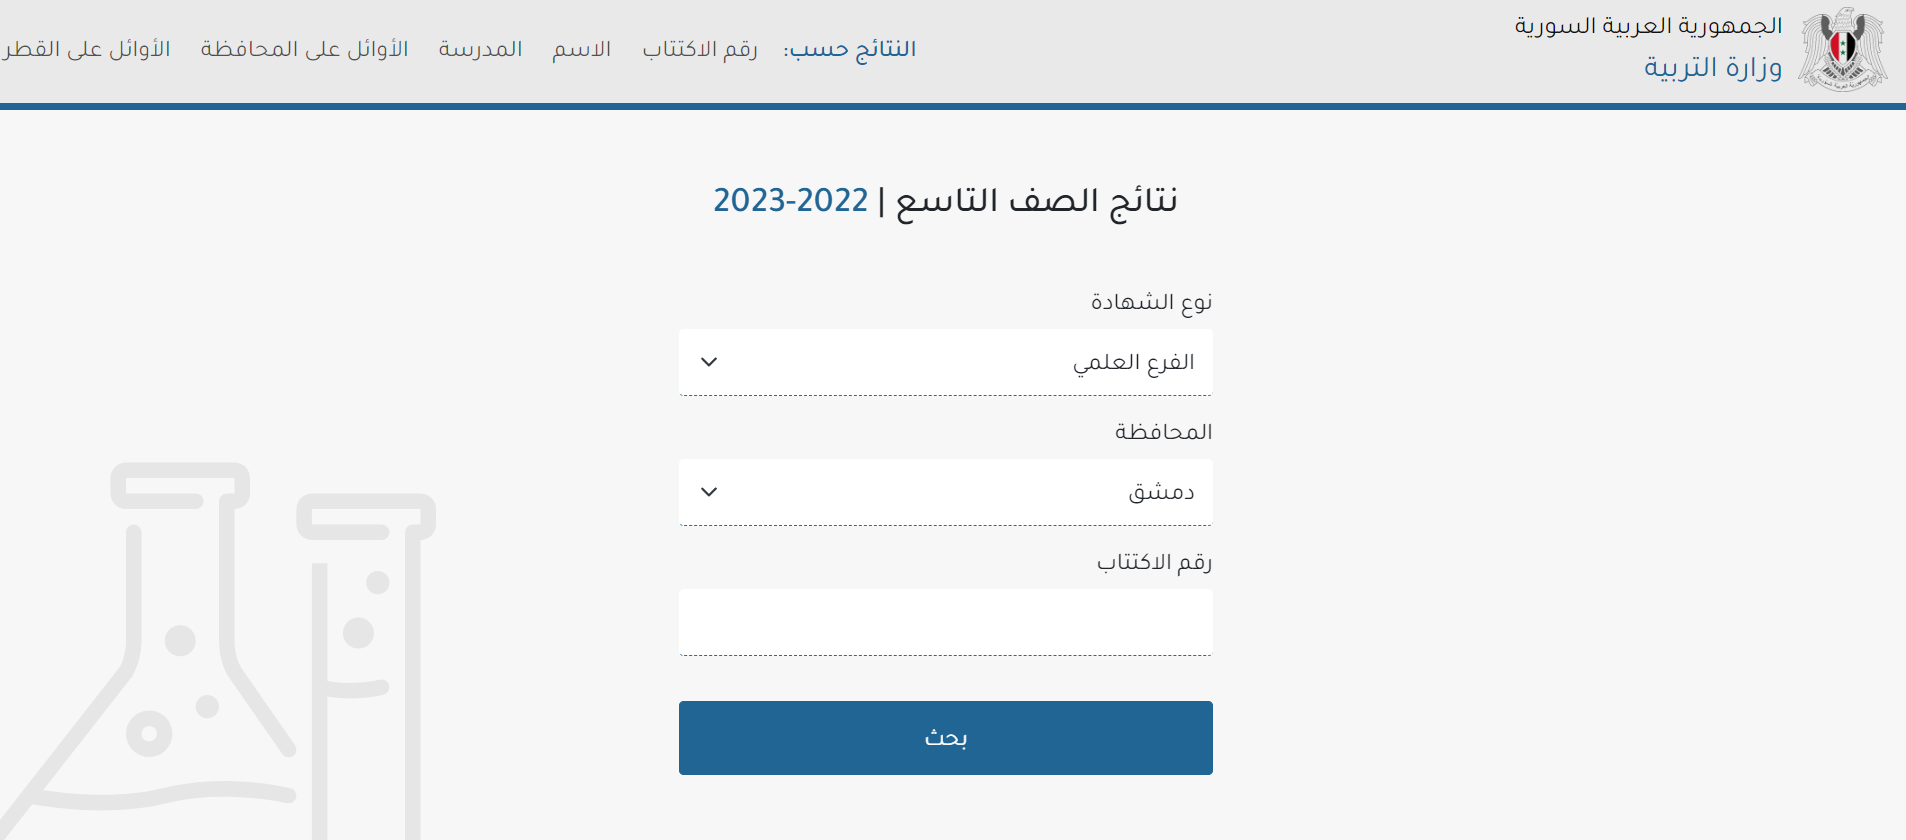 وزارة التربية السورية moed.gov.sy نتائج تاسع 2023 حسب الاسم ورقم الاكتتاب